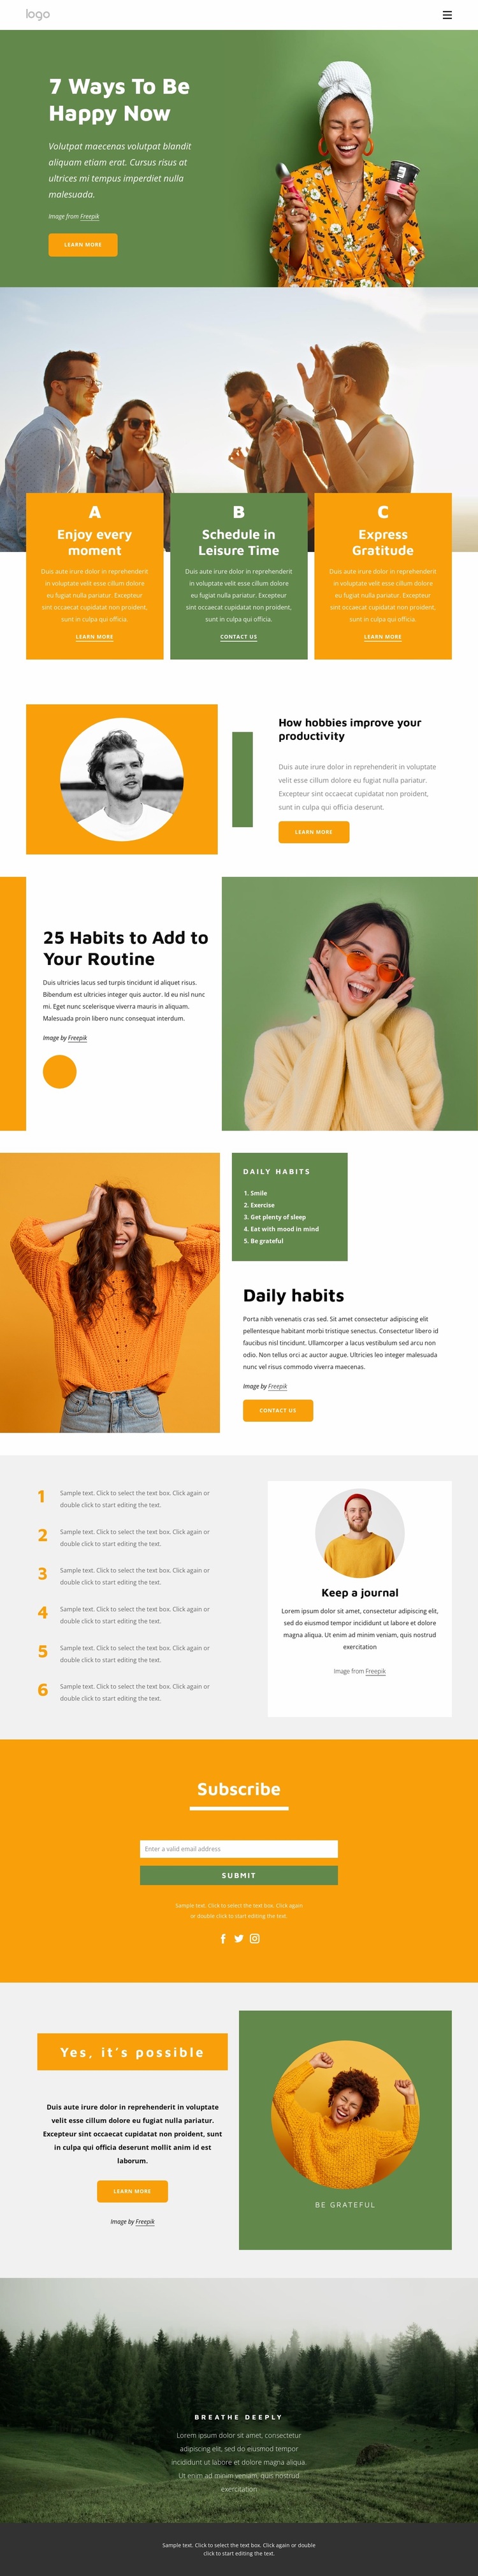 Habits of happy people Website Design